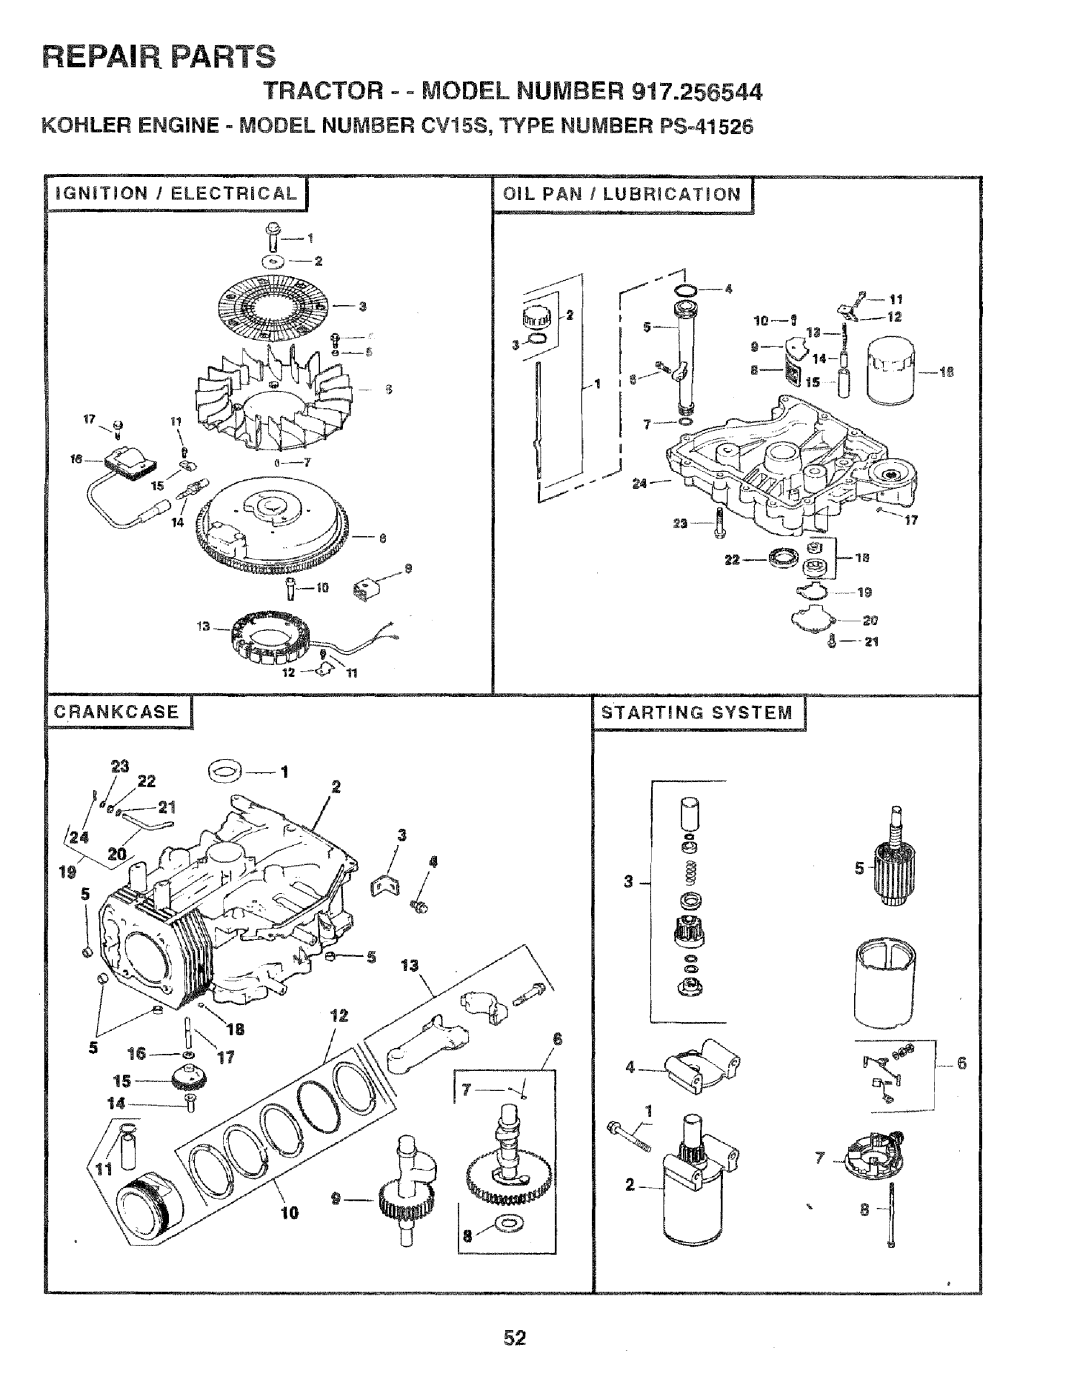 Craftsman 917.256544 owner manual 9 lI_, Repai P! Parts, TRACTOR o - MODEL NUMBER 